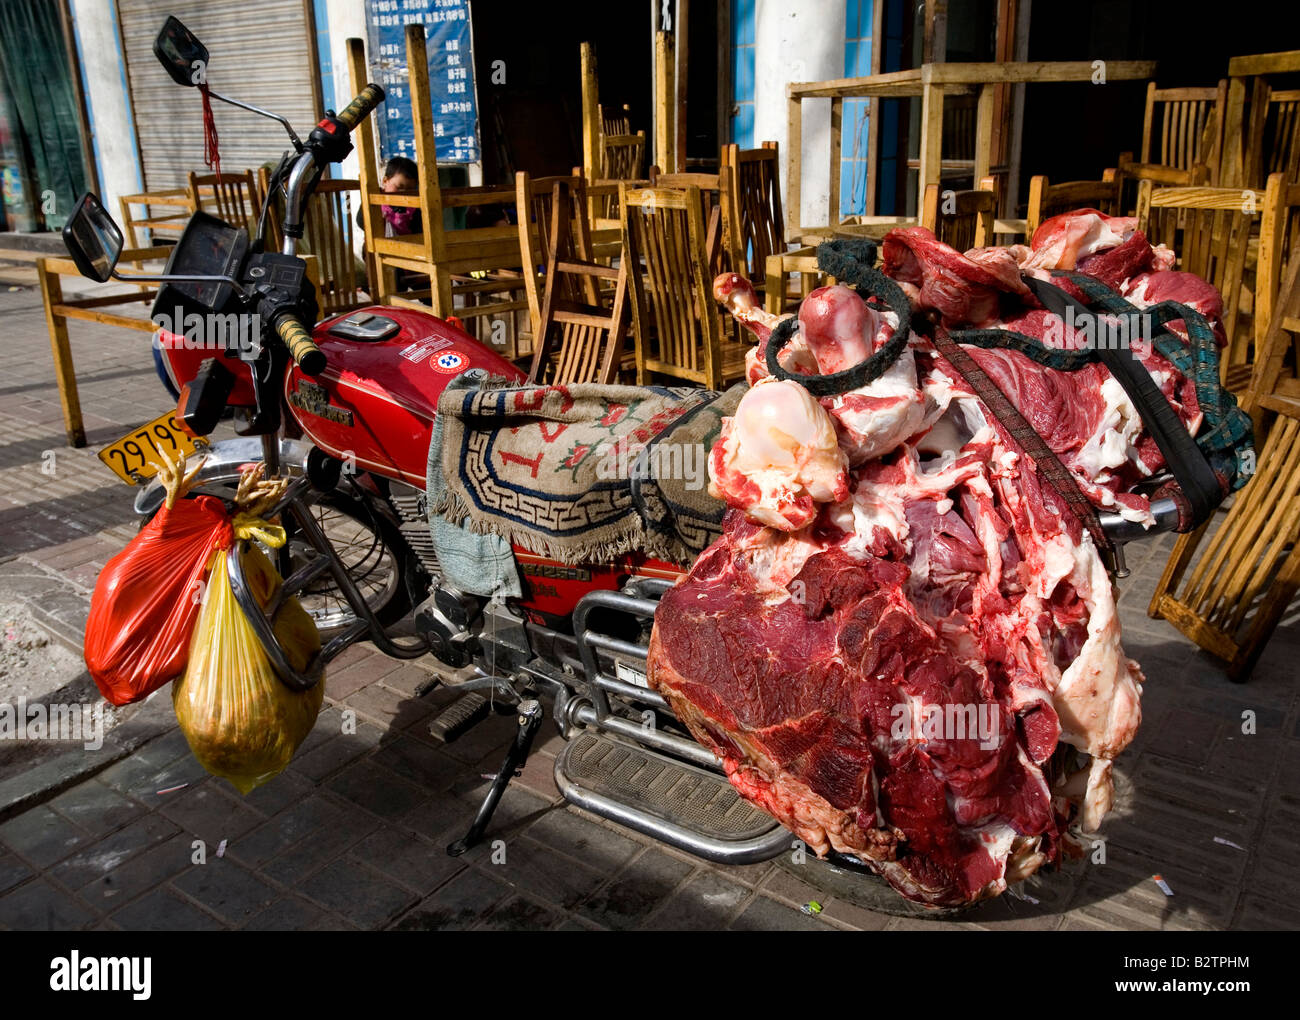 La viande sur une moto Banque D'Images